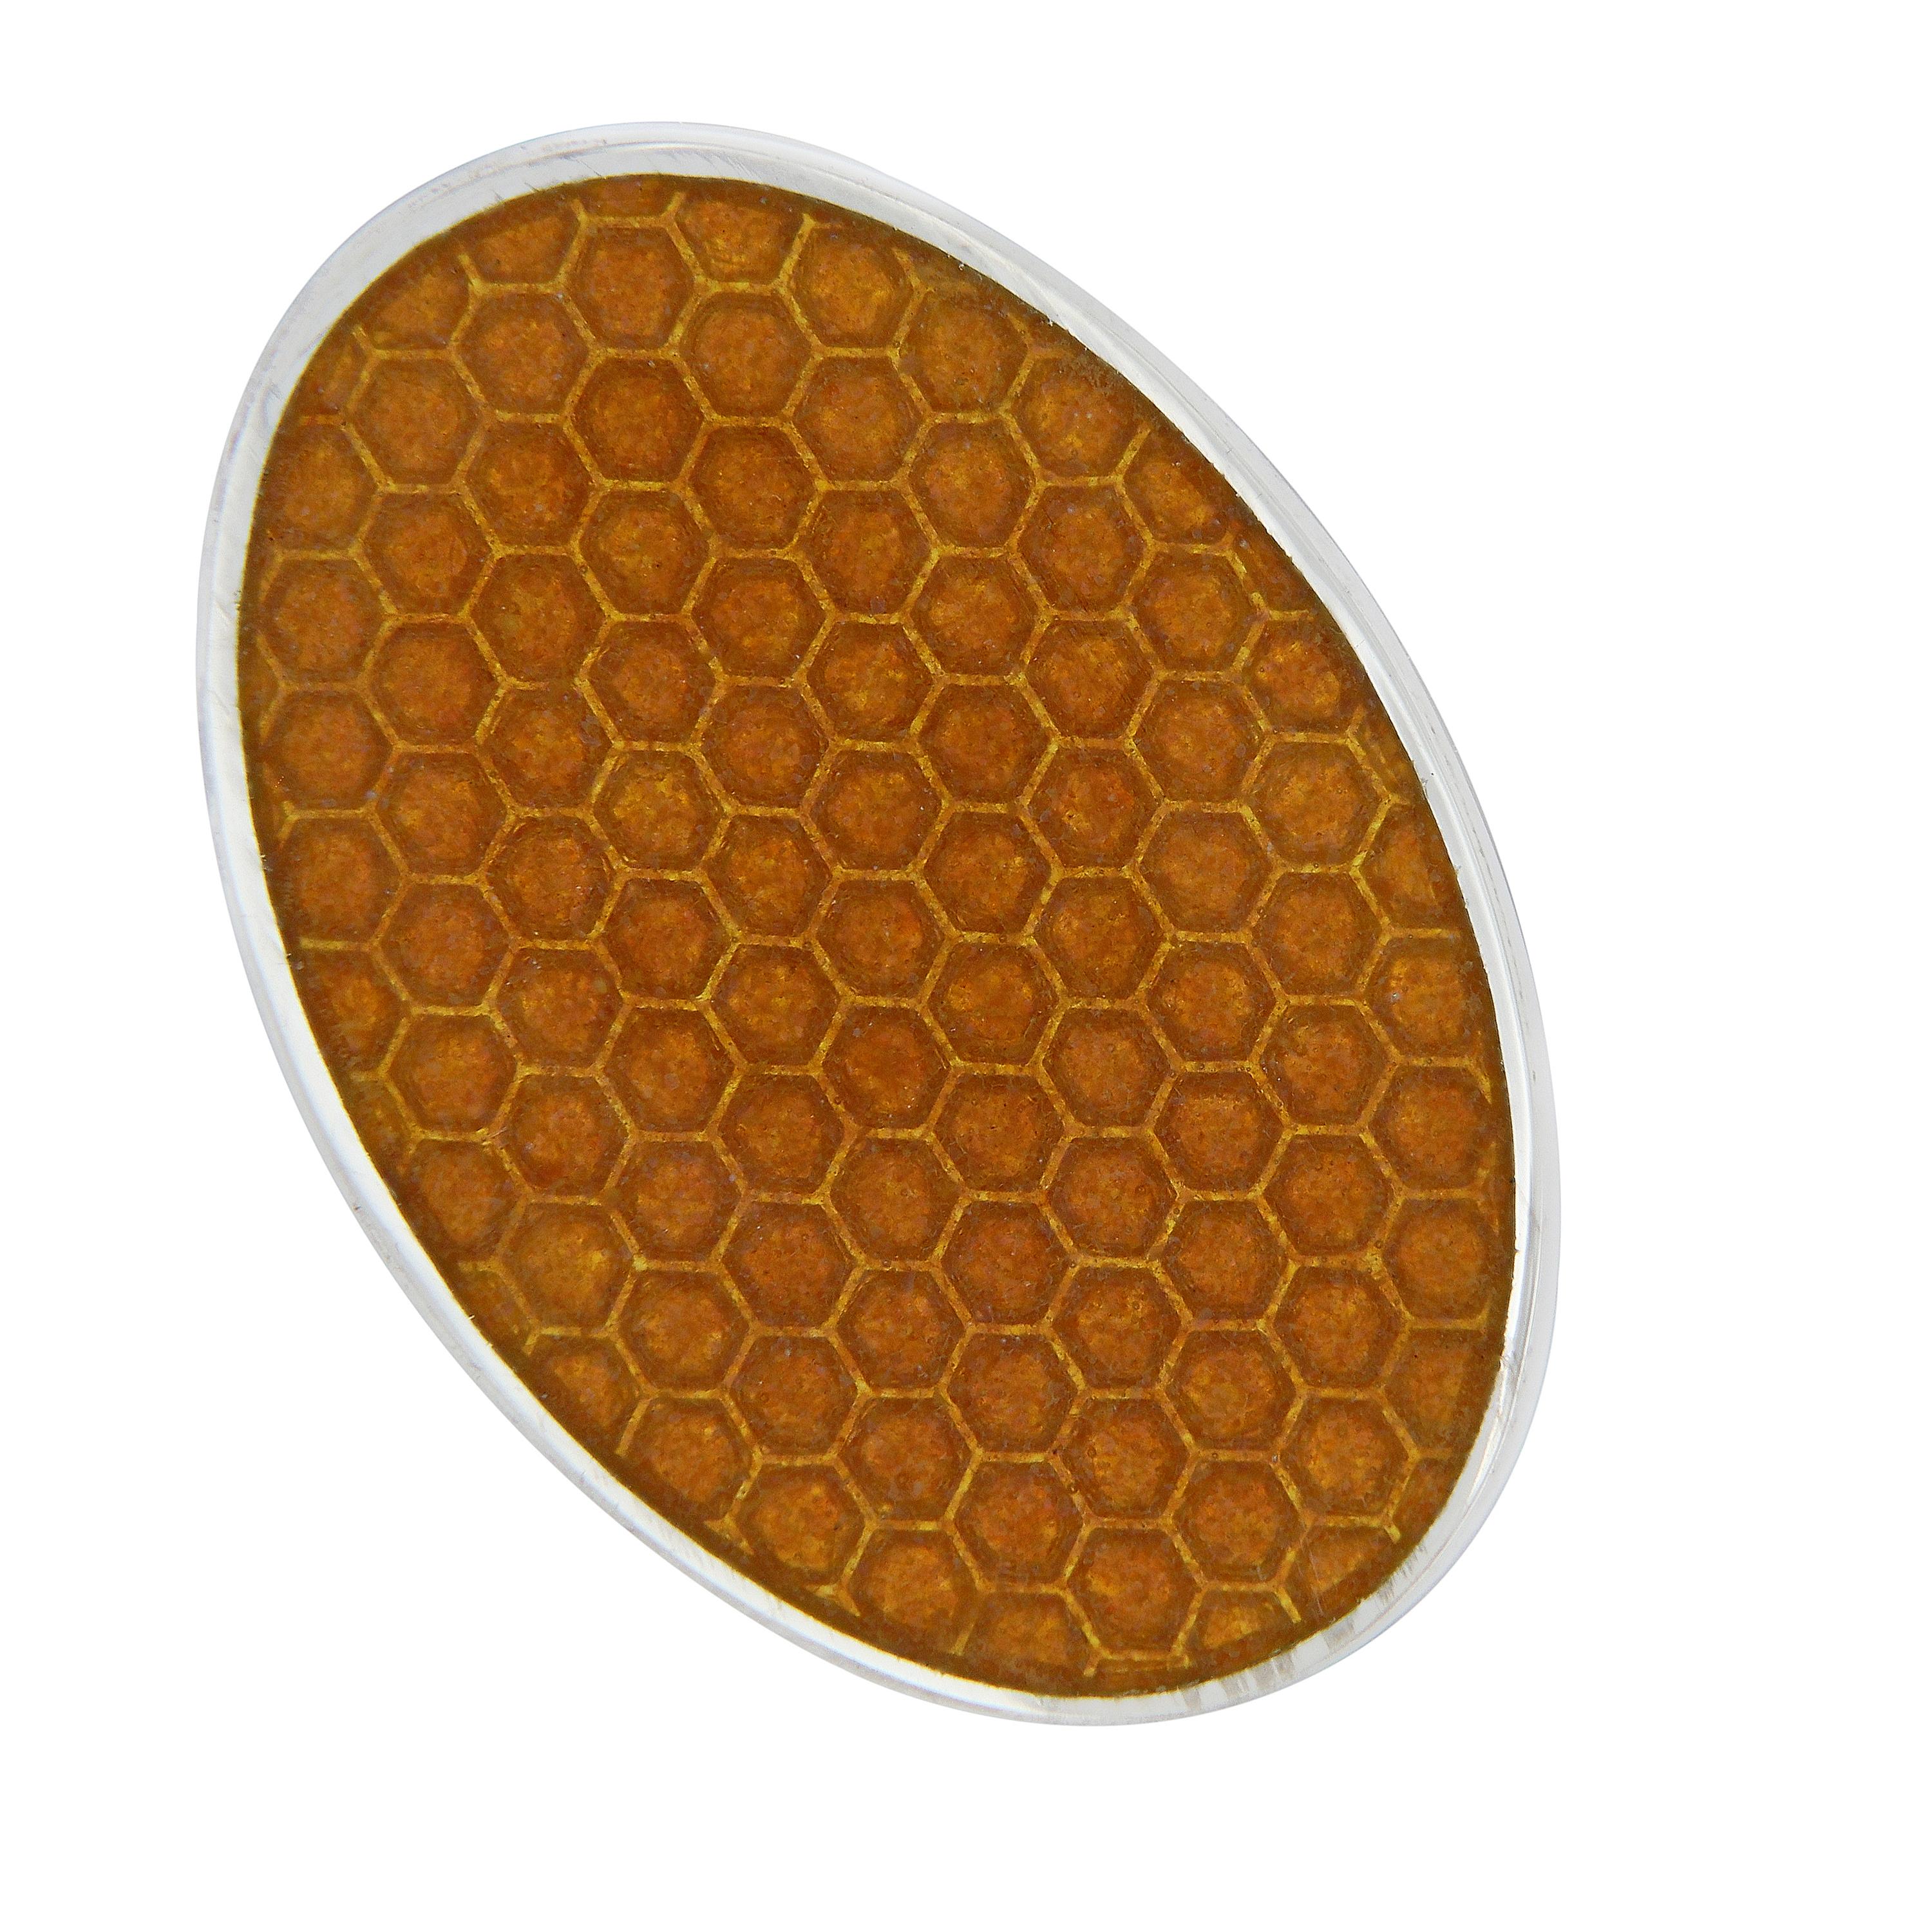 Schöne Manschettenknöpfe mit Guilloche-Emaille im Wabendesign. Handgefertigt in England für Campanelli & Pear. Wiegt 12,6 Gramm. Das Oval misst 14 mm x 19 mm.